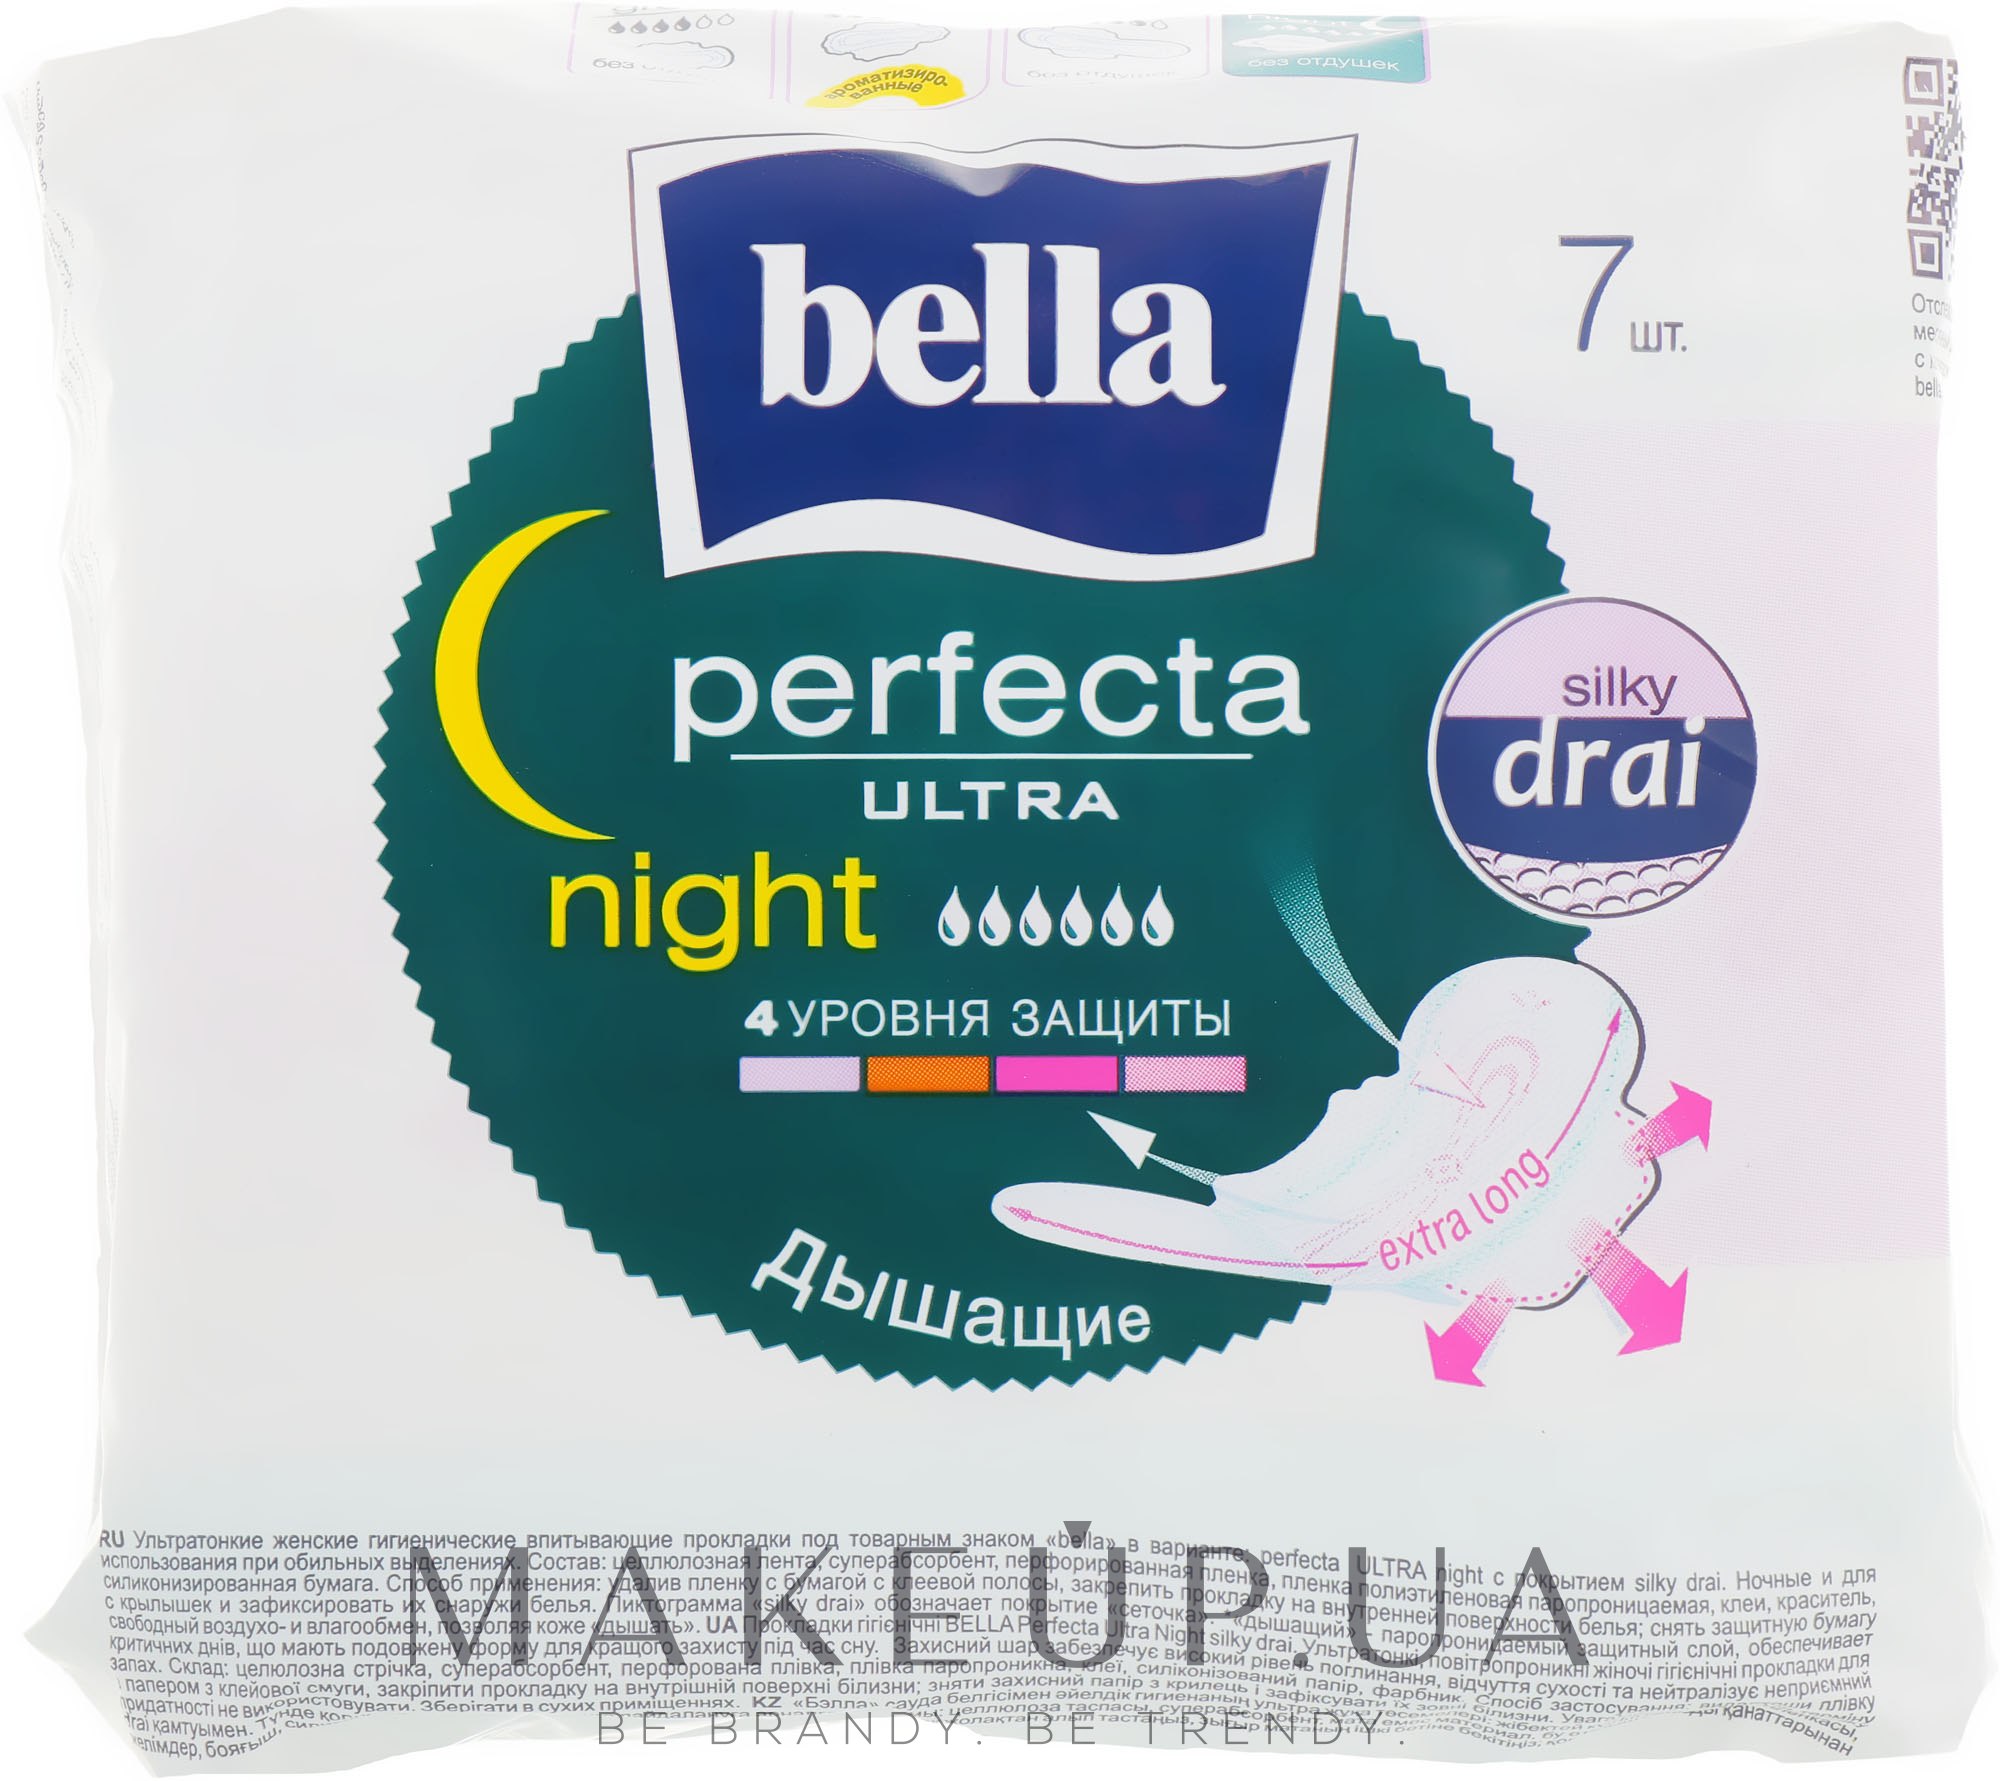 Прокладки Perfecta Night & Drain Ultra, 7 шт - Bella — фото 7шт